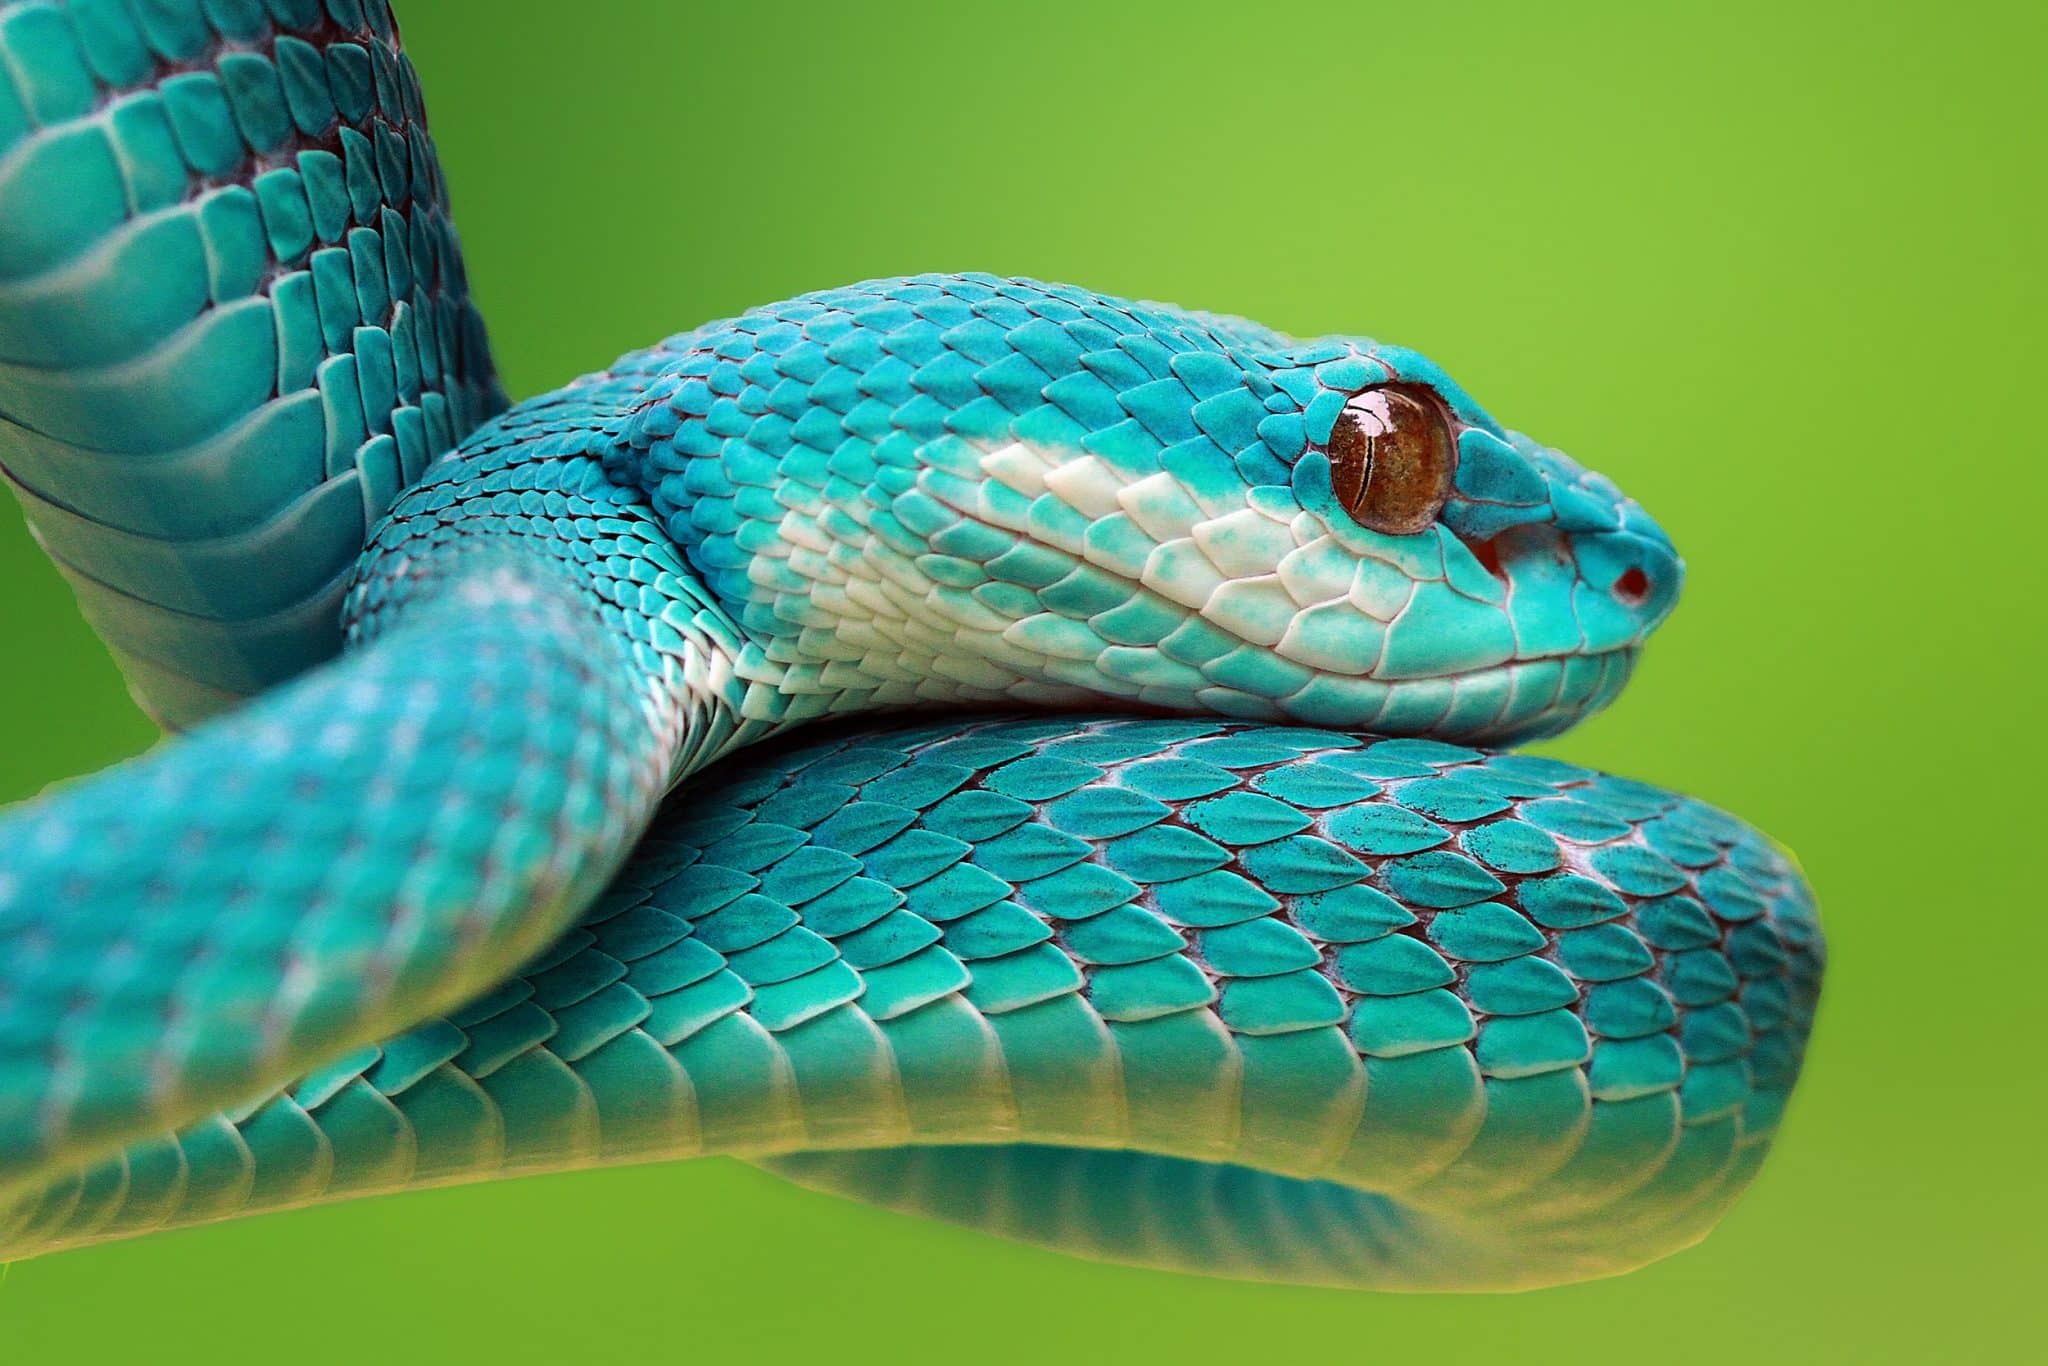 Cobra azul com olho branco